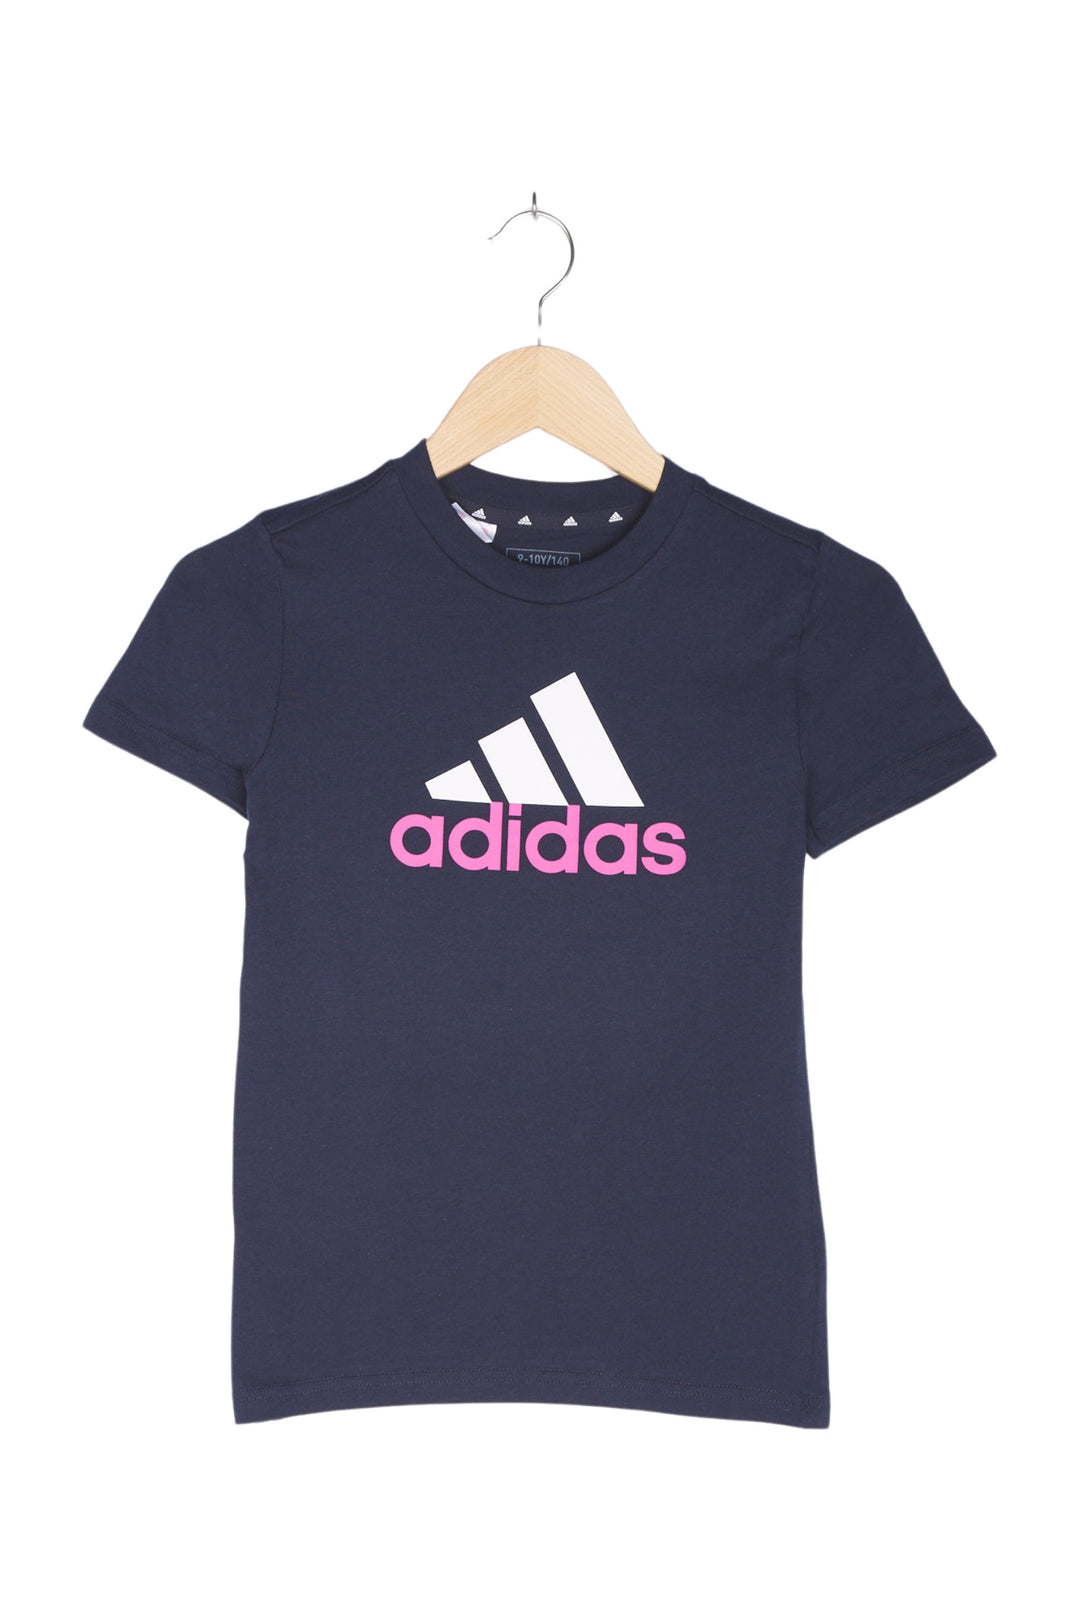 Adidas T-Shirt für Kinder